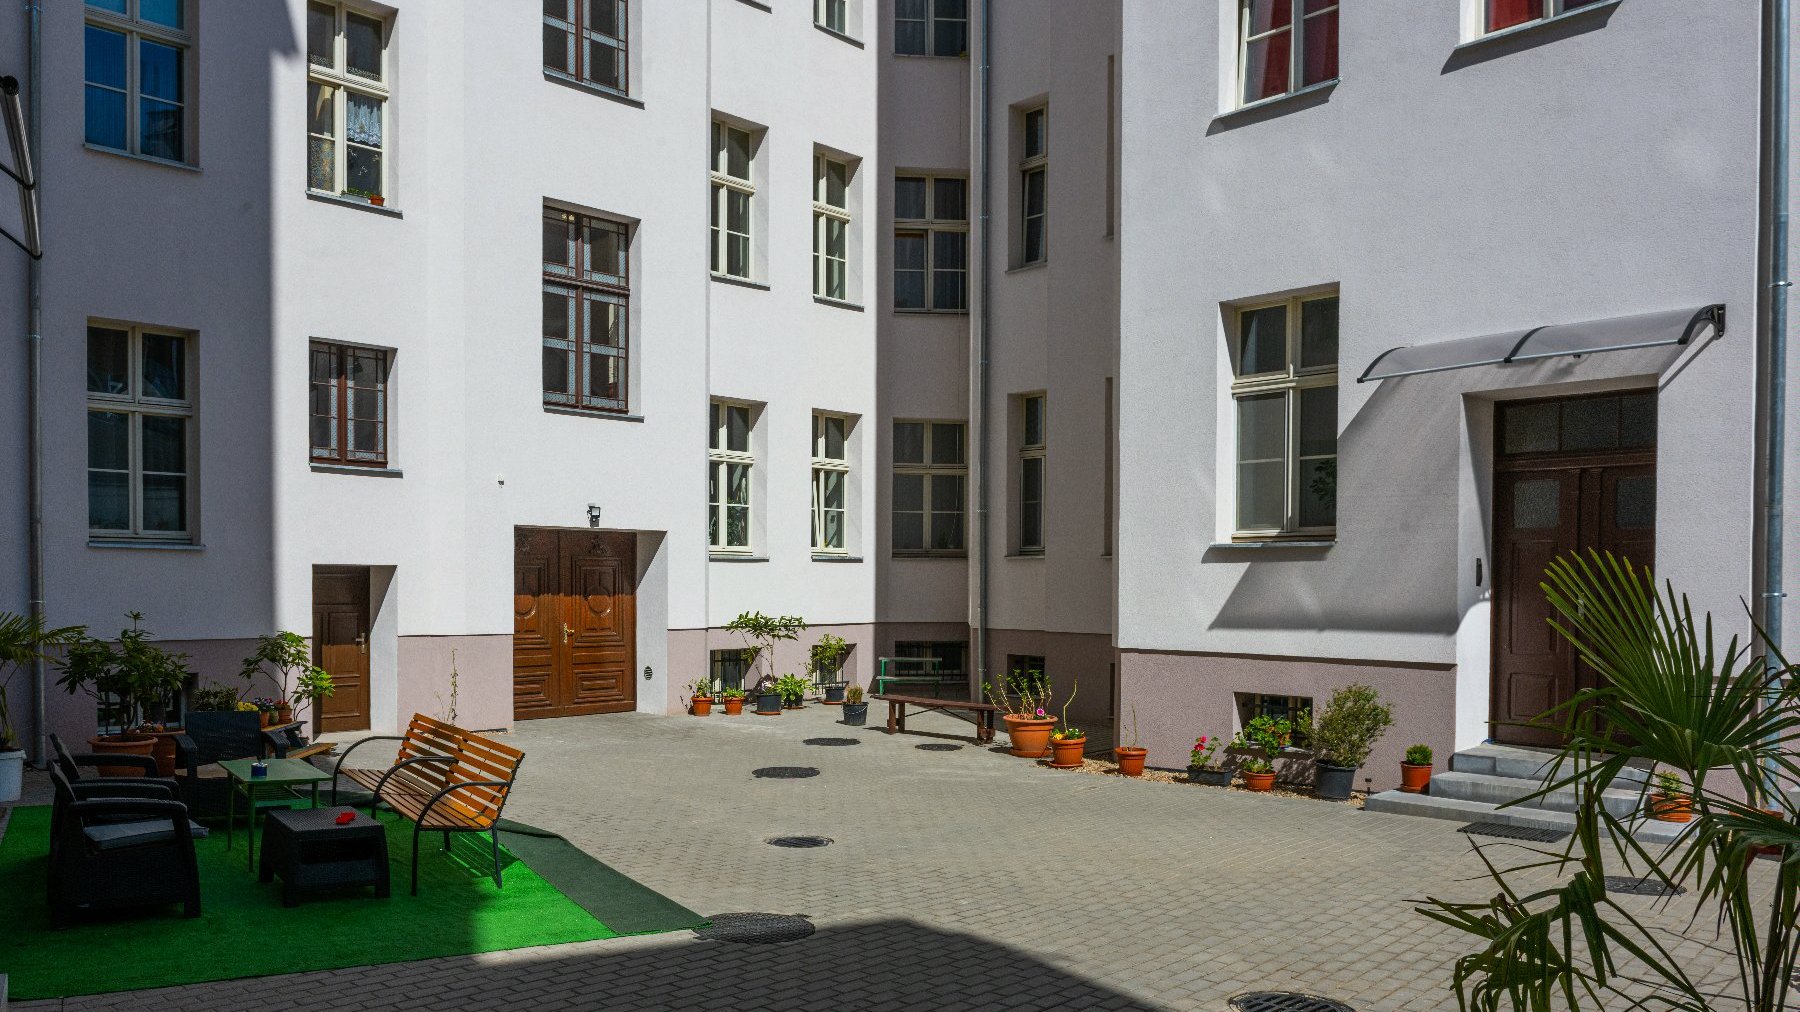 Galeria zdjęć przedstawia klatkę schodową i elewację budynku przy ul. Kościuszki.